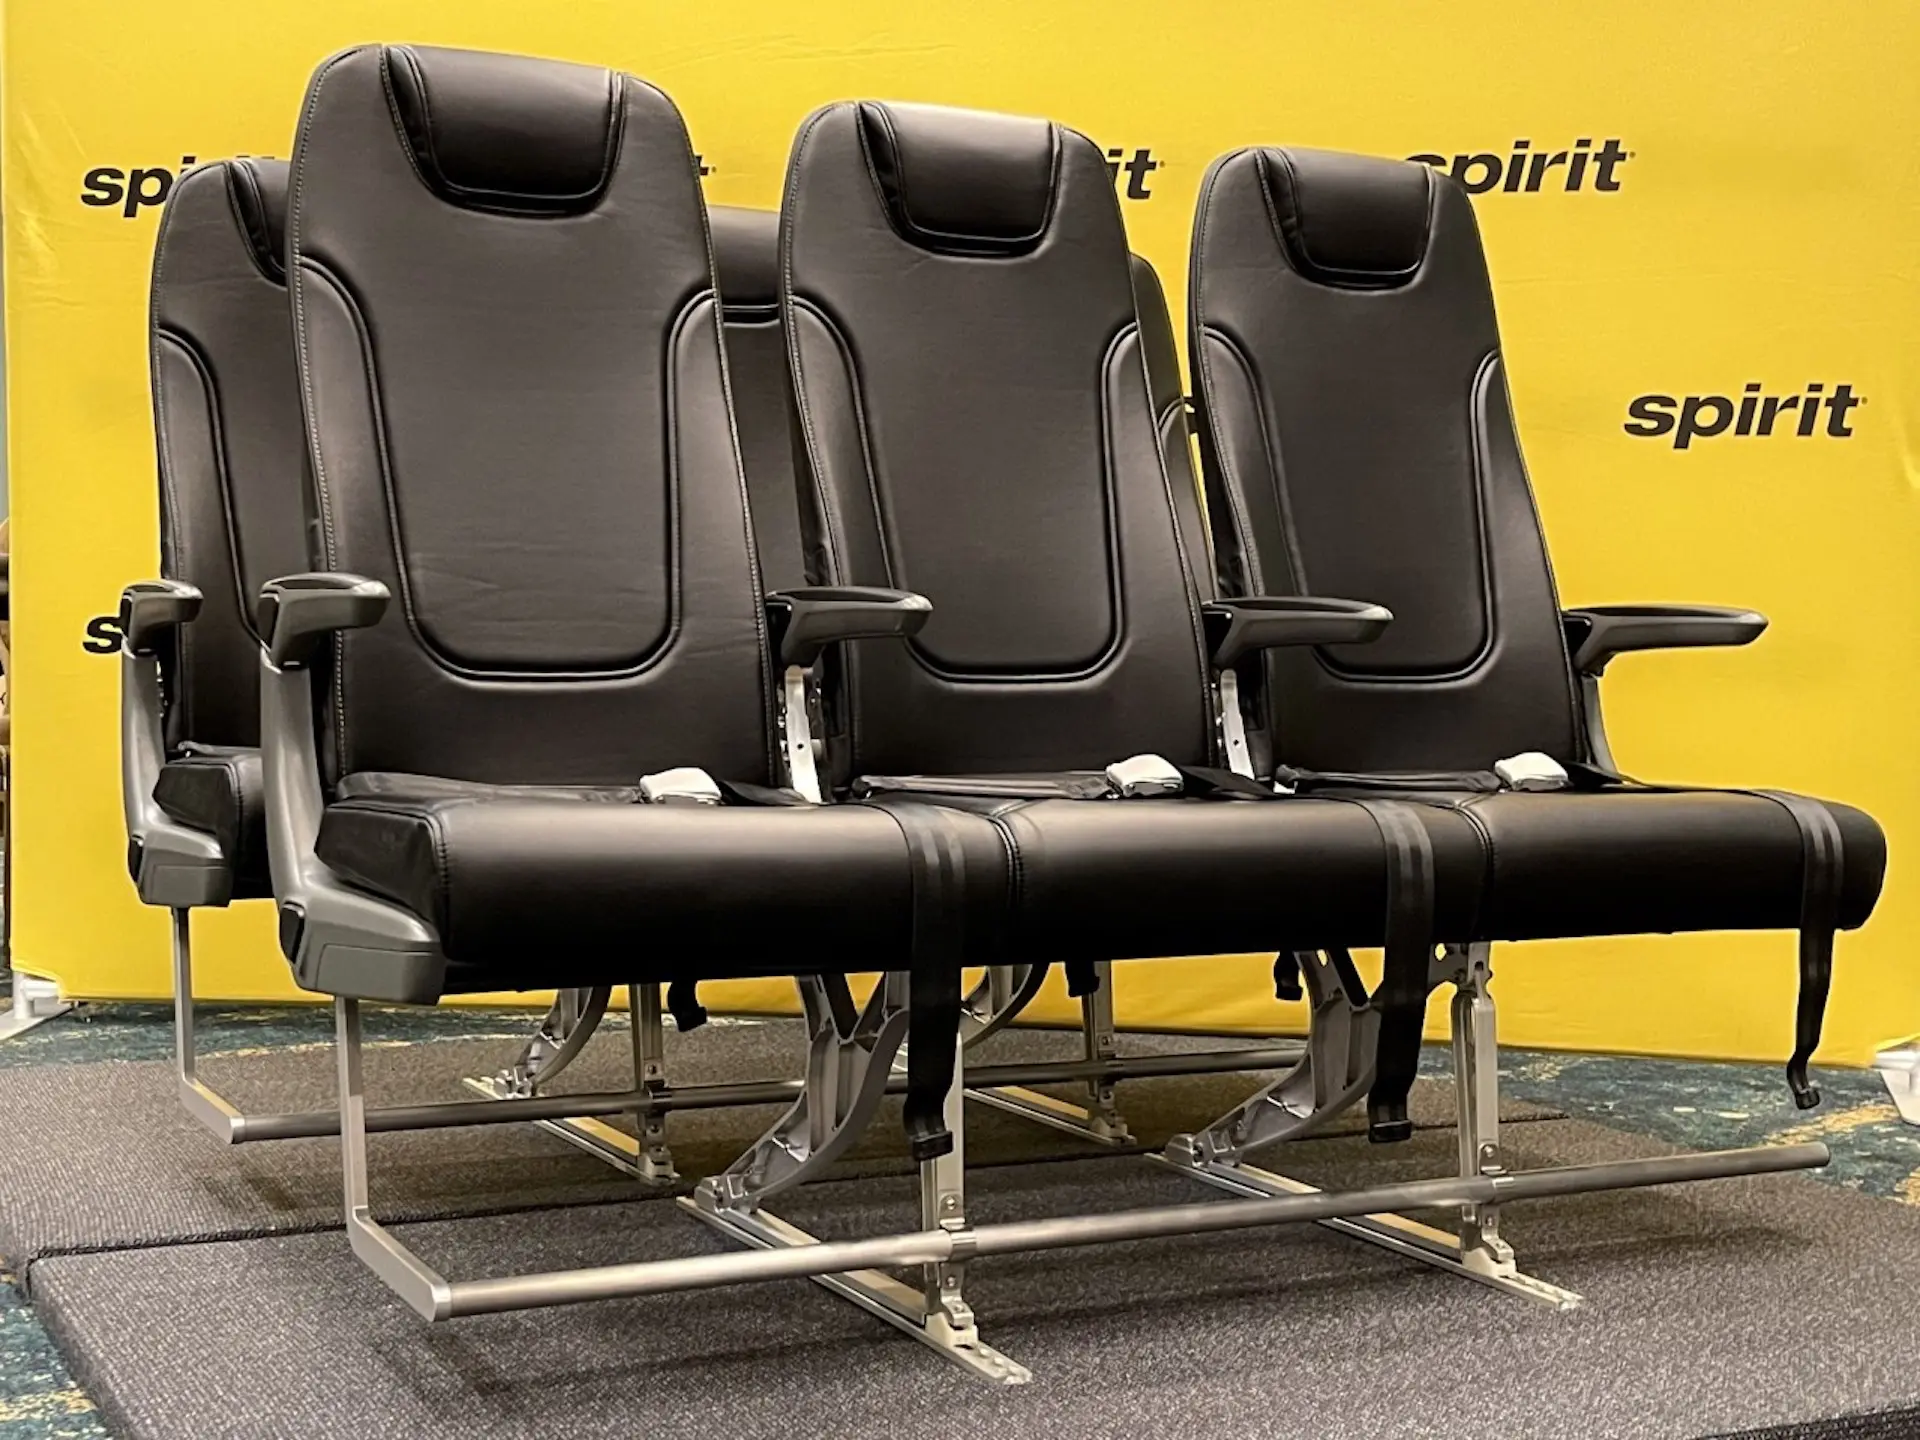 ¿Qué pasa con los asientos de los aviones? Una aerolínea anunció butacas más amplias